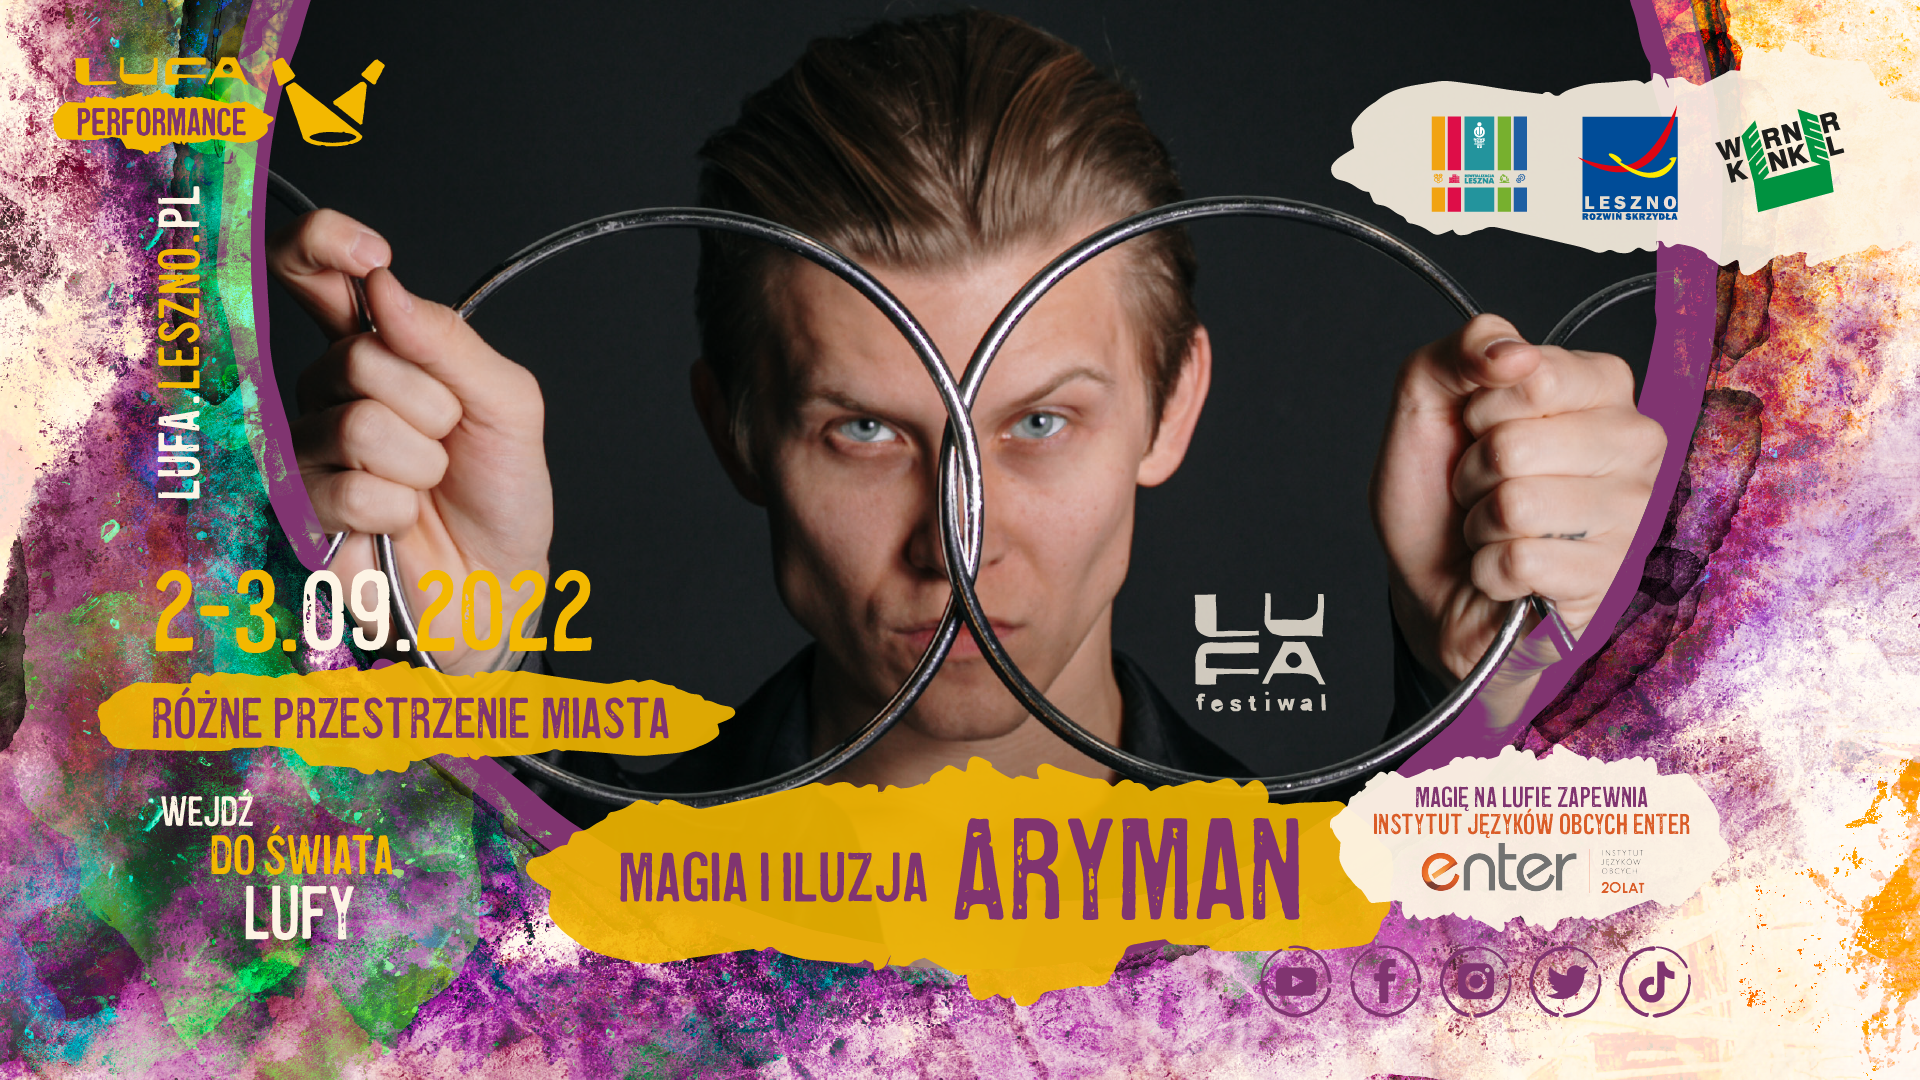 ARYMAN LUFA Festiwal 2022